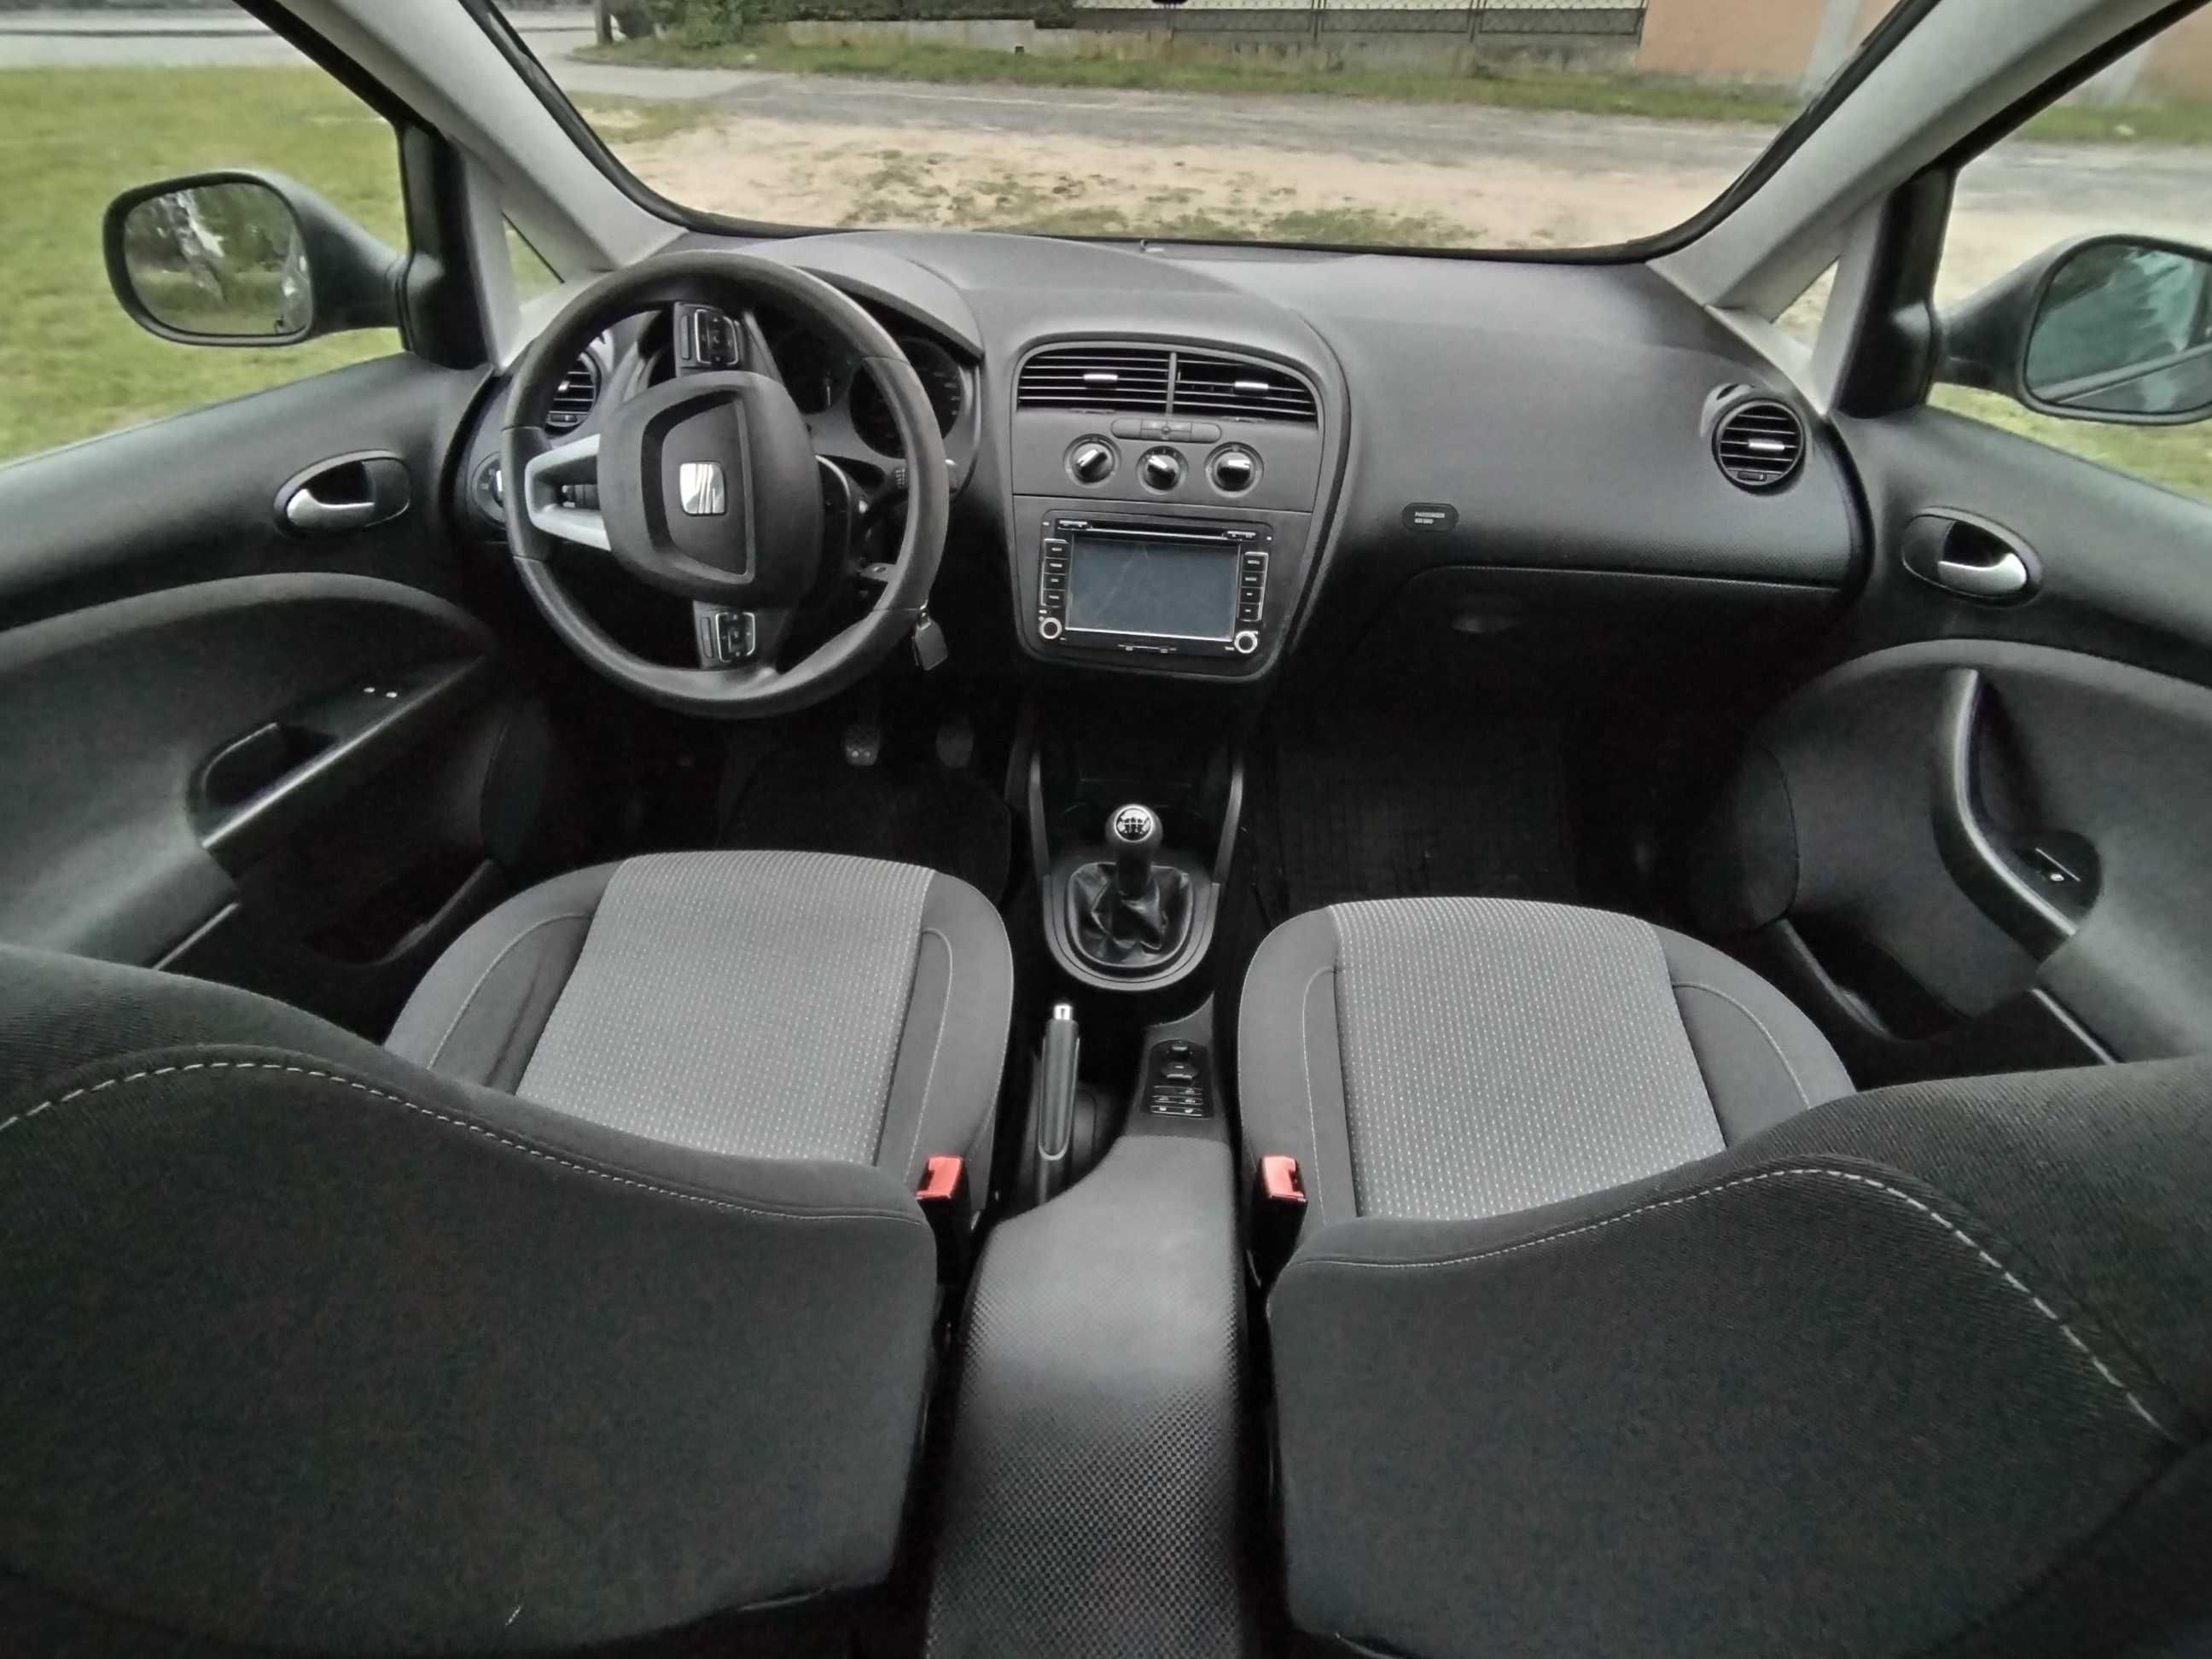 Seat Altea XL 1.6TDI sprawny, zadbany